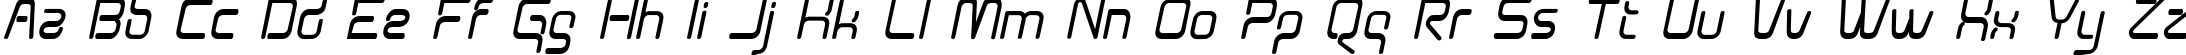 Пример написания английского алфавита шрифтом Aunchanted Bold Oblique